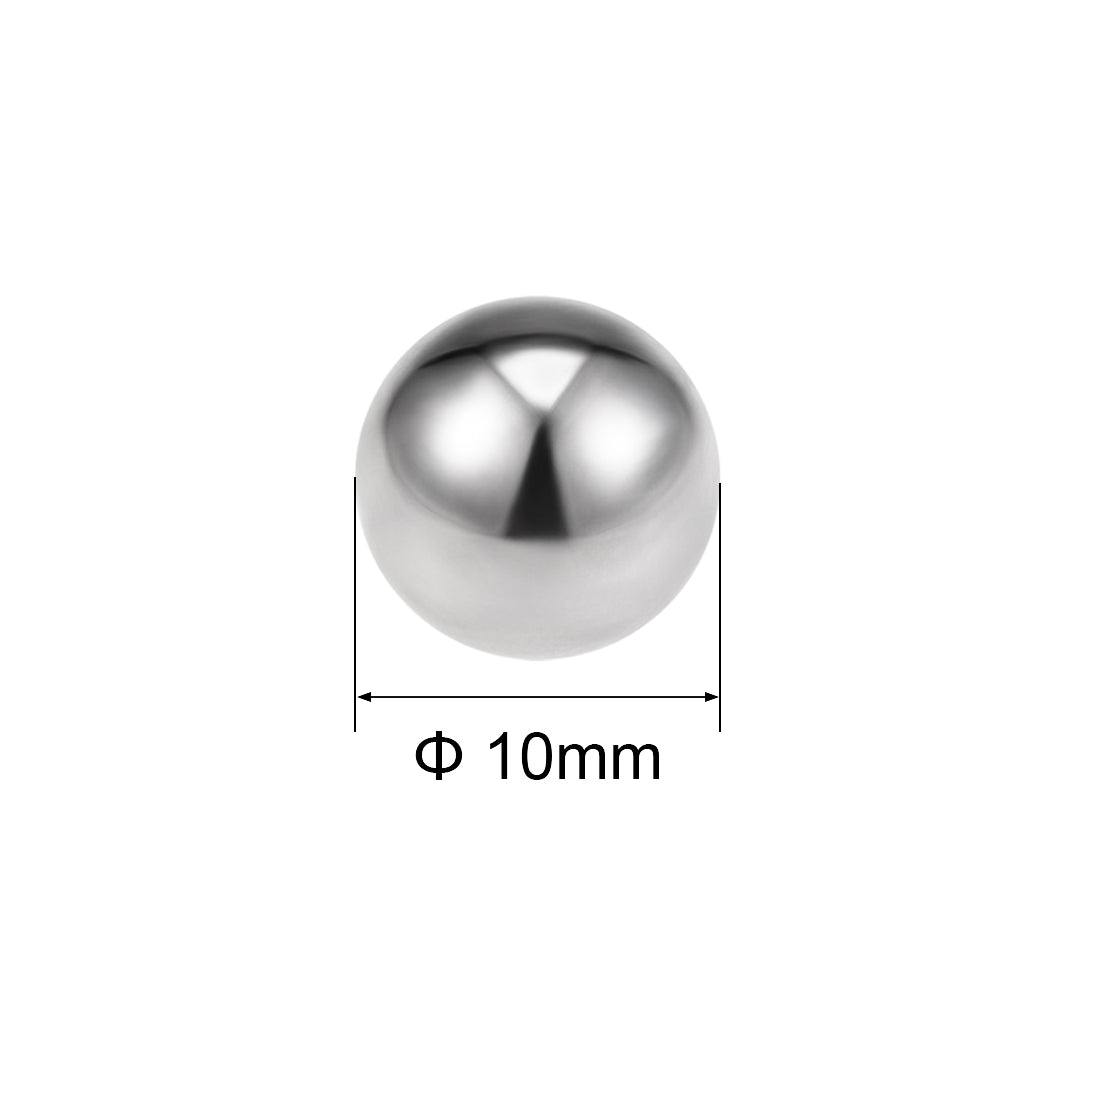 uxcell Uxcell 10mm Bearing Balls Tungsten Carbide G25 Precision Balls